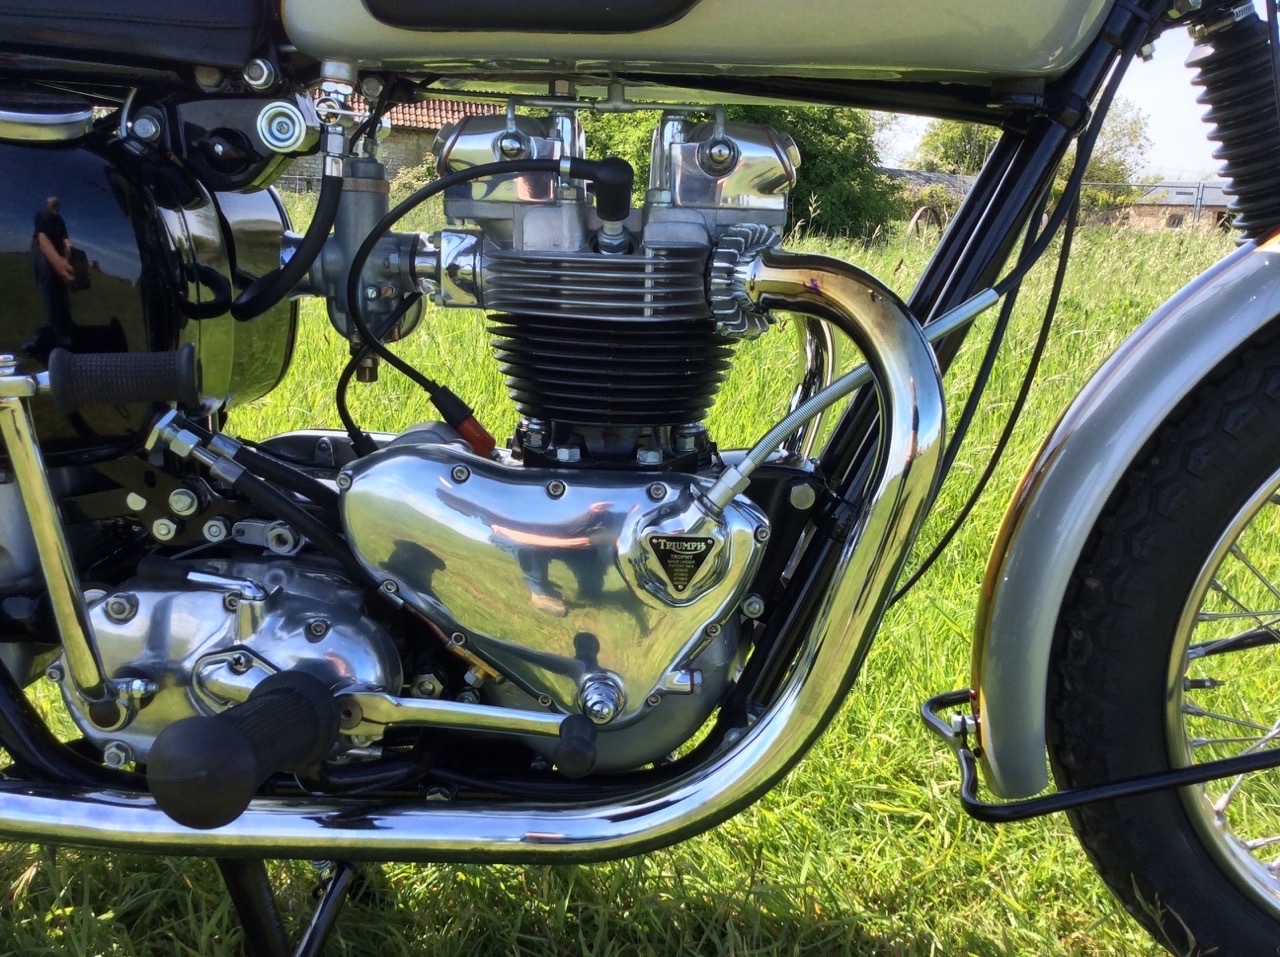 1961 Triumph Trophy TR6 650cc - Image 2 of 10